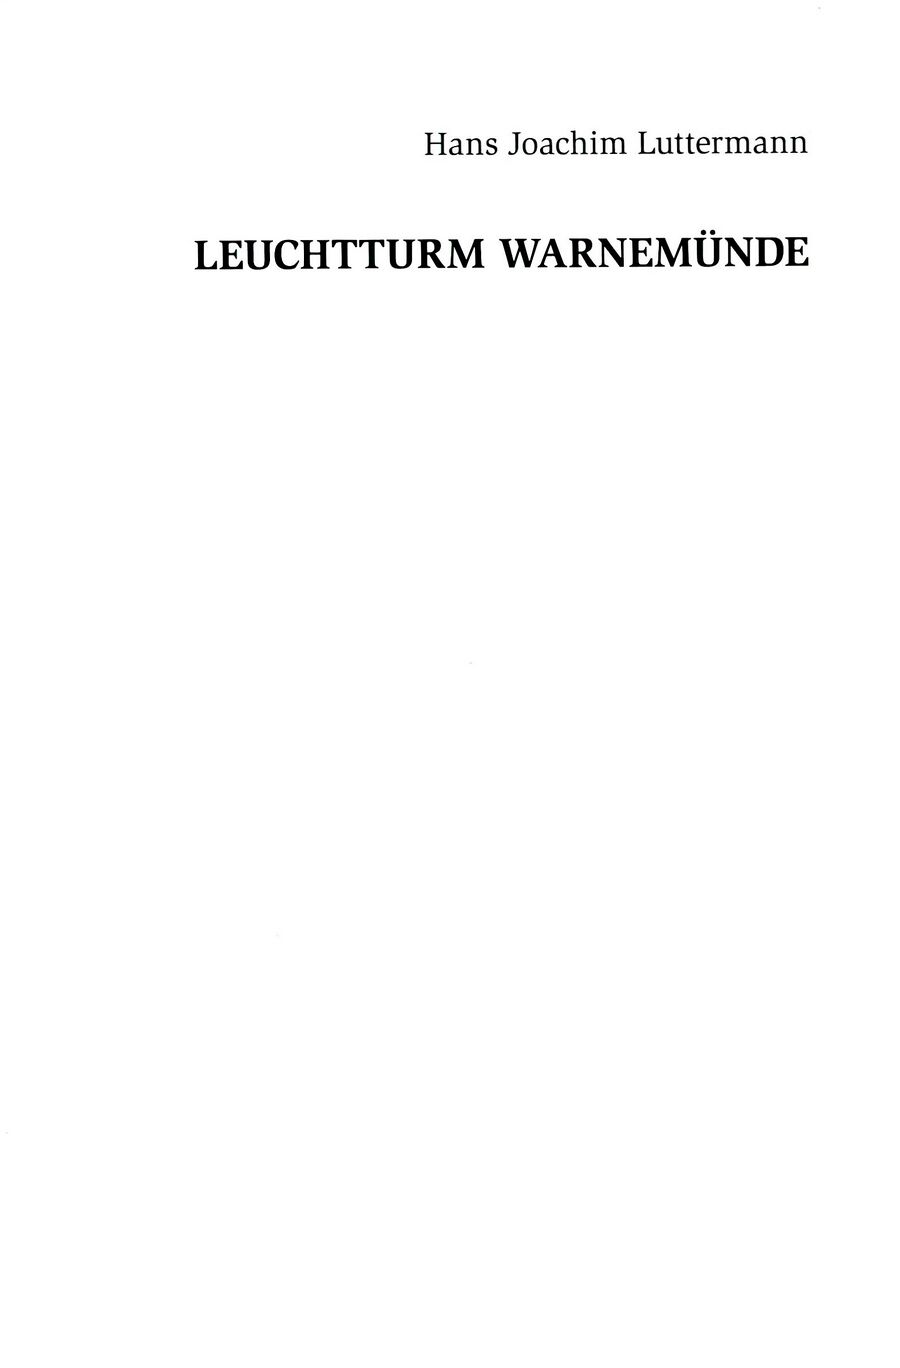 wmde Leuchtturm Luttermann 2013 001